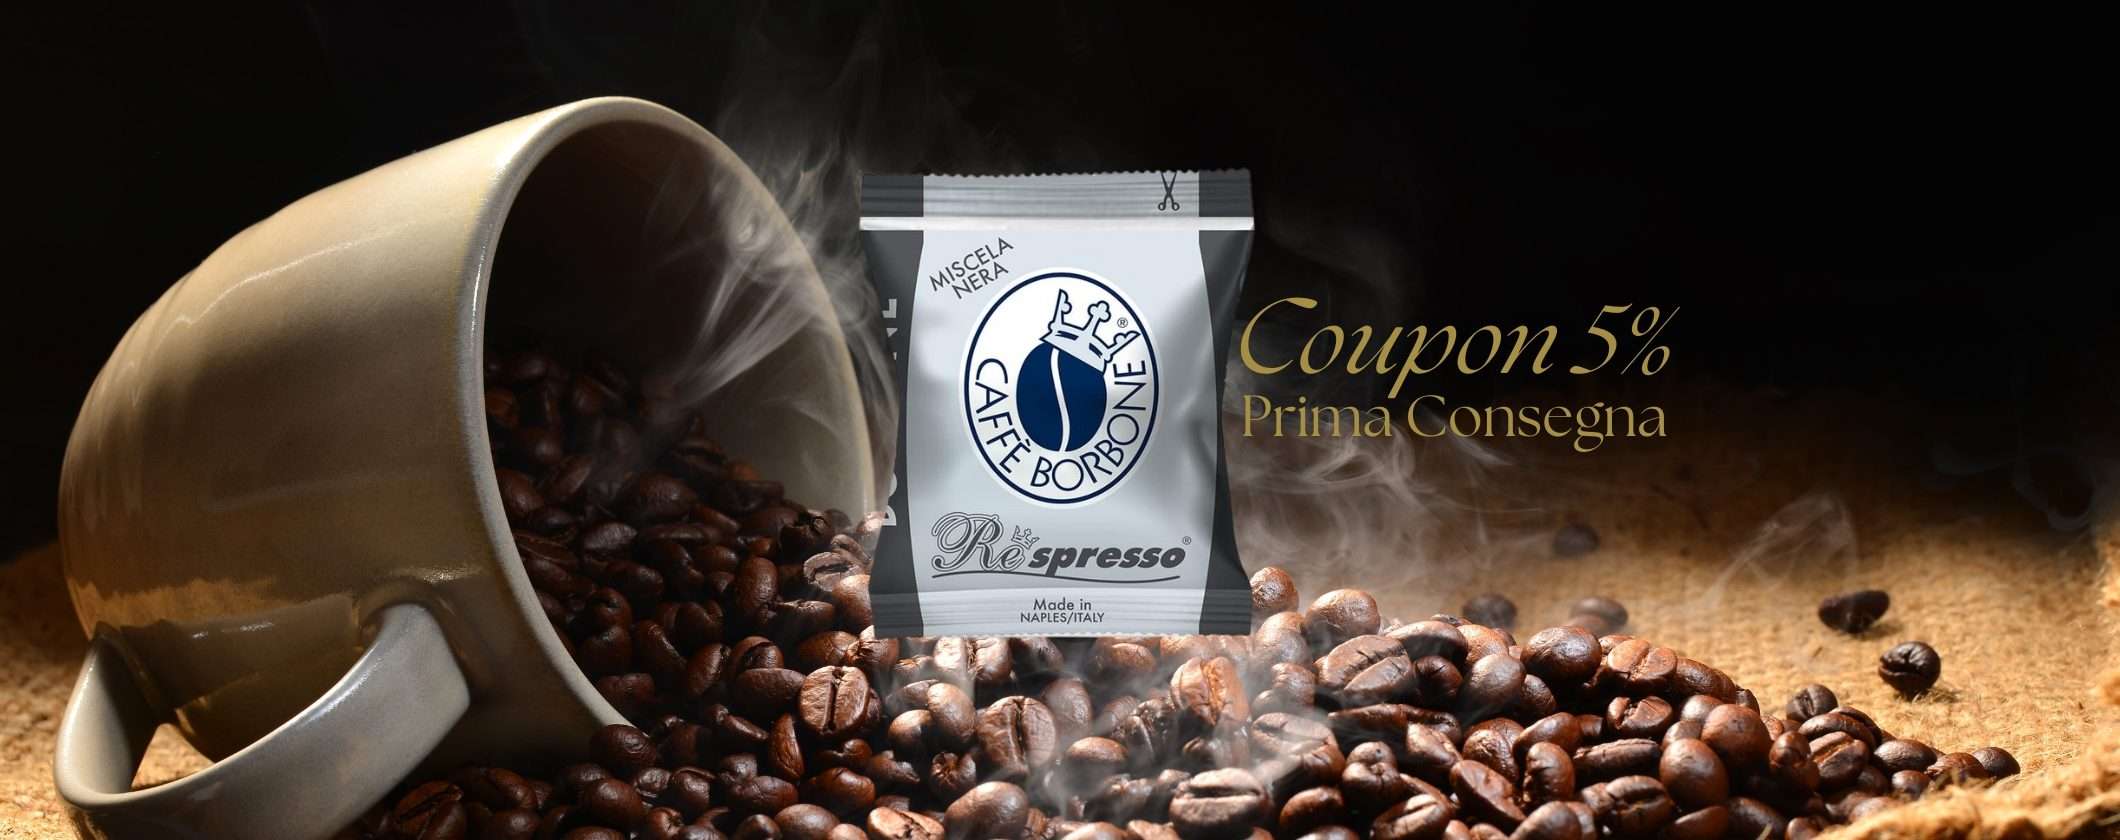 Capsule Caffè Borbone Nespresso: sfrutta il 5% sulla prima consegna